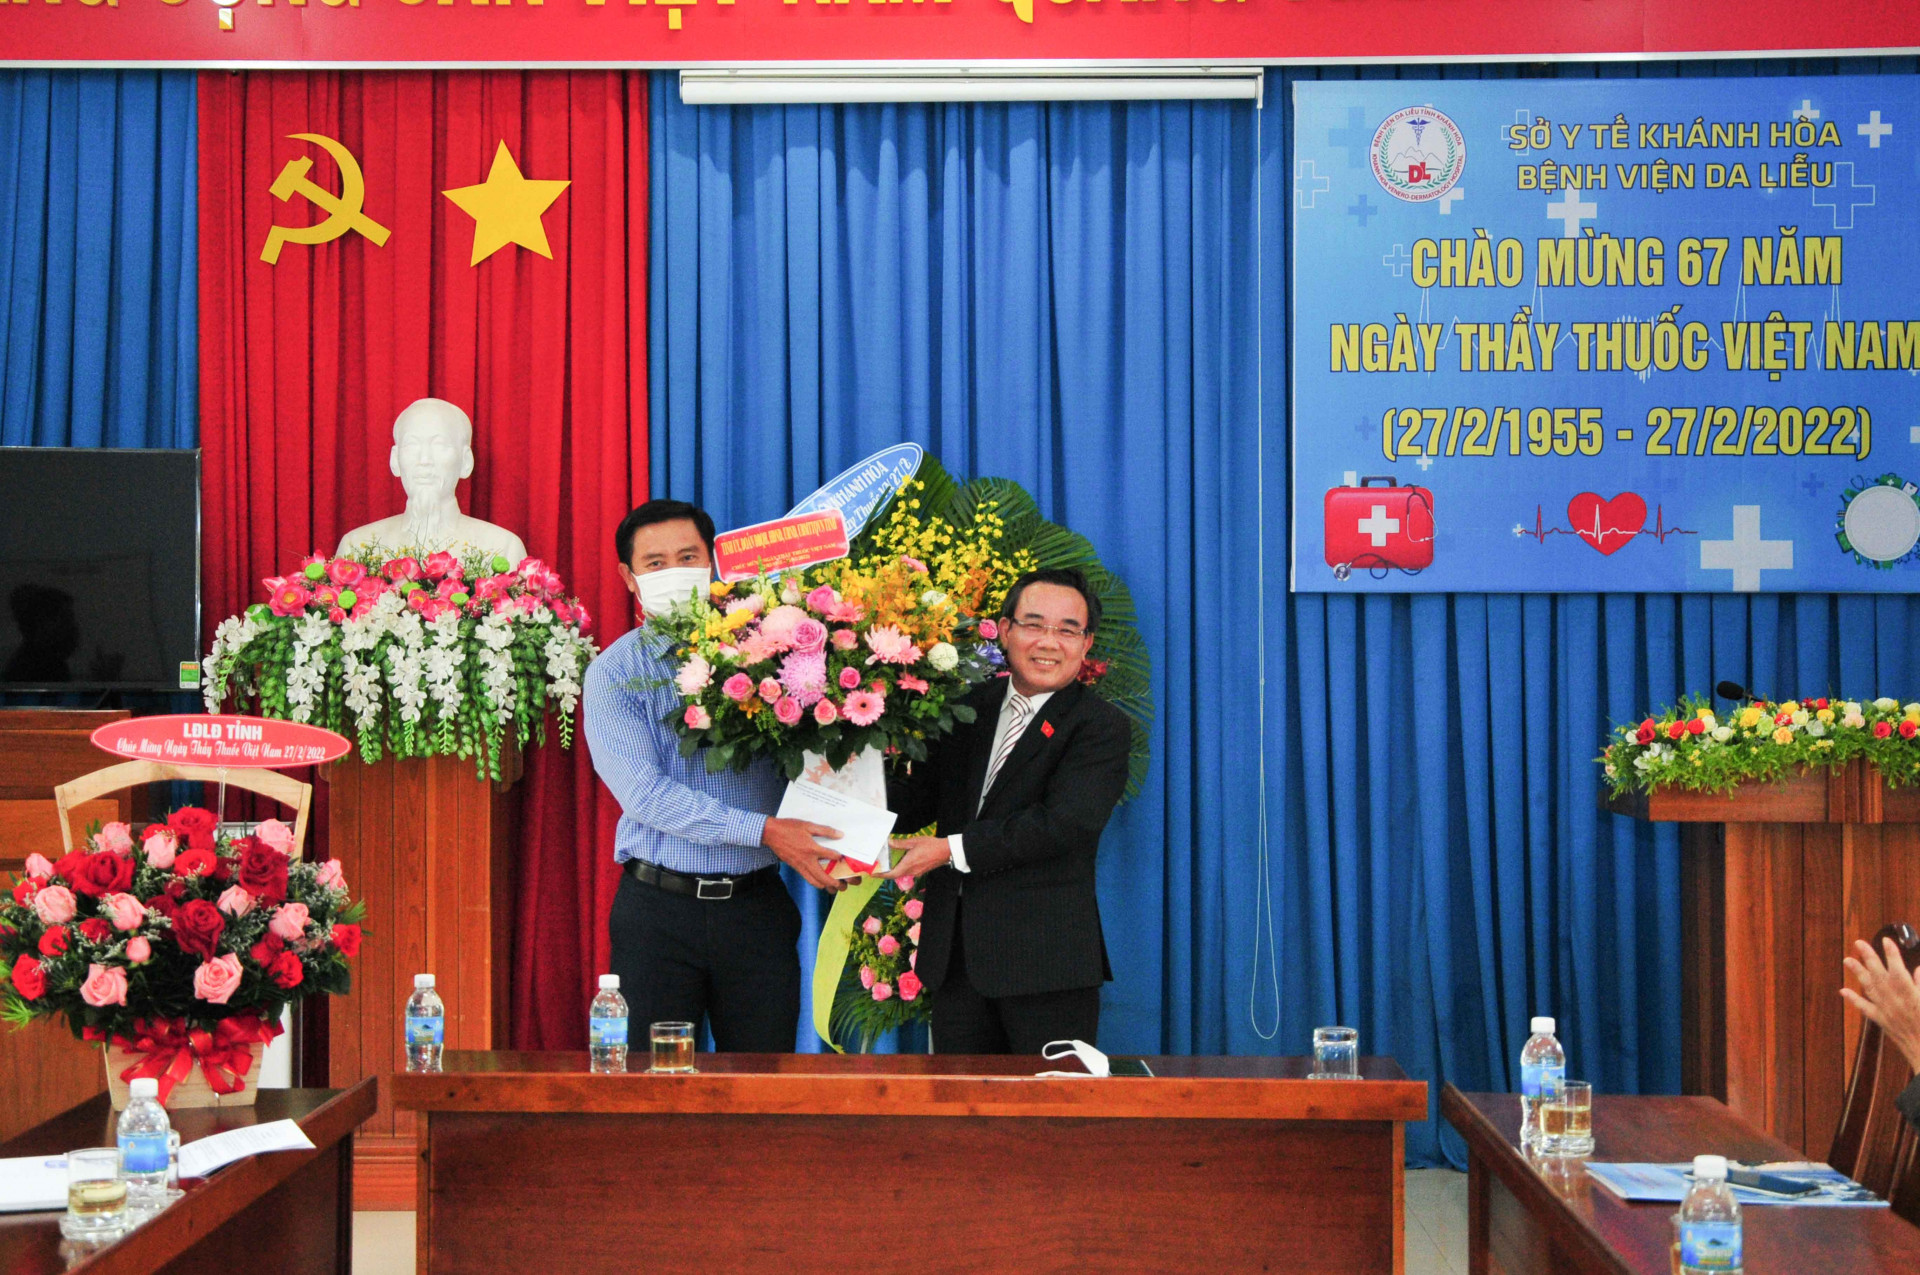 Đồng chí Lê Hữu Trí tặng hoa và quà cho lãnh đạo Bệnh viện Da liễu